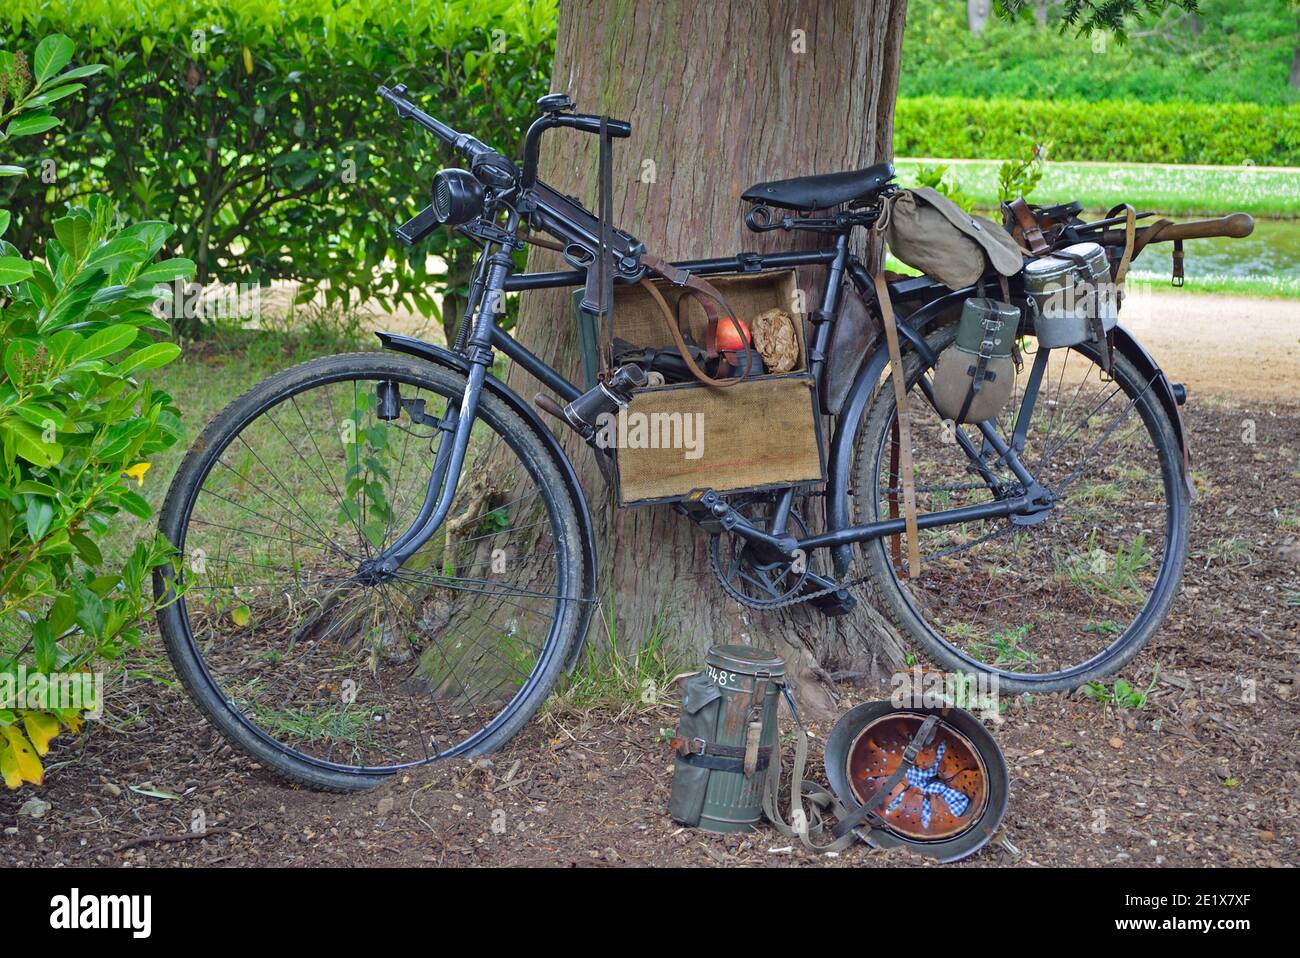 Oldtimer-Fahrrad mit deutscher Ausrüstung aus dem 2. Weltkrieg  einschließlich Maschinengewehr und Helm Stockfotografie - Alamy